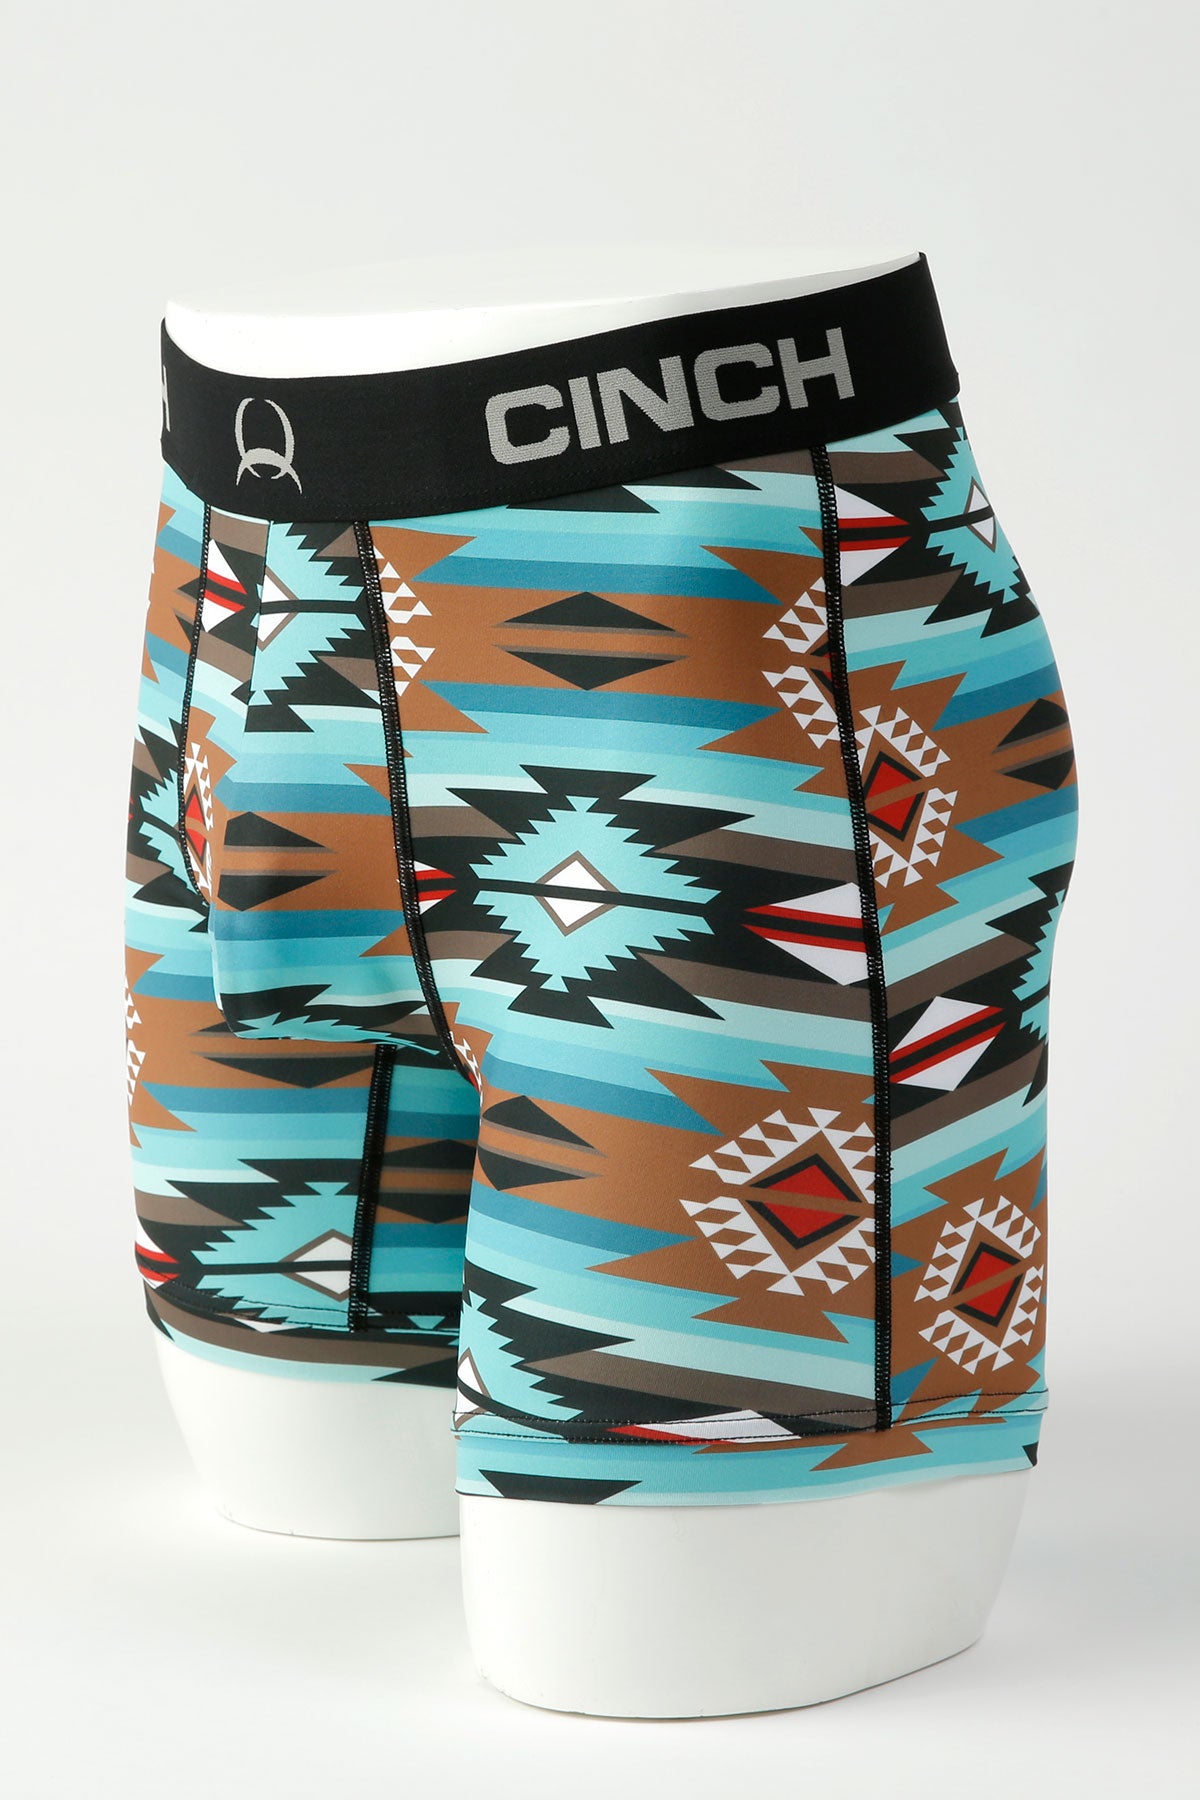 Cinch Men's Boxer Shorts STYLE MXY6002030